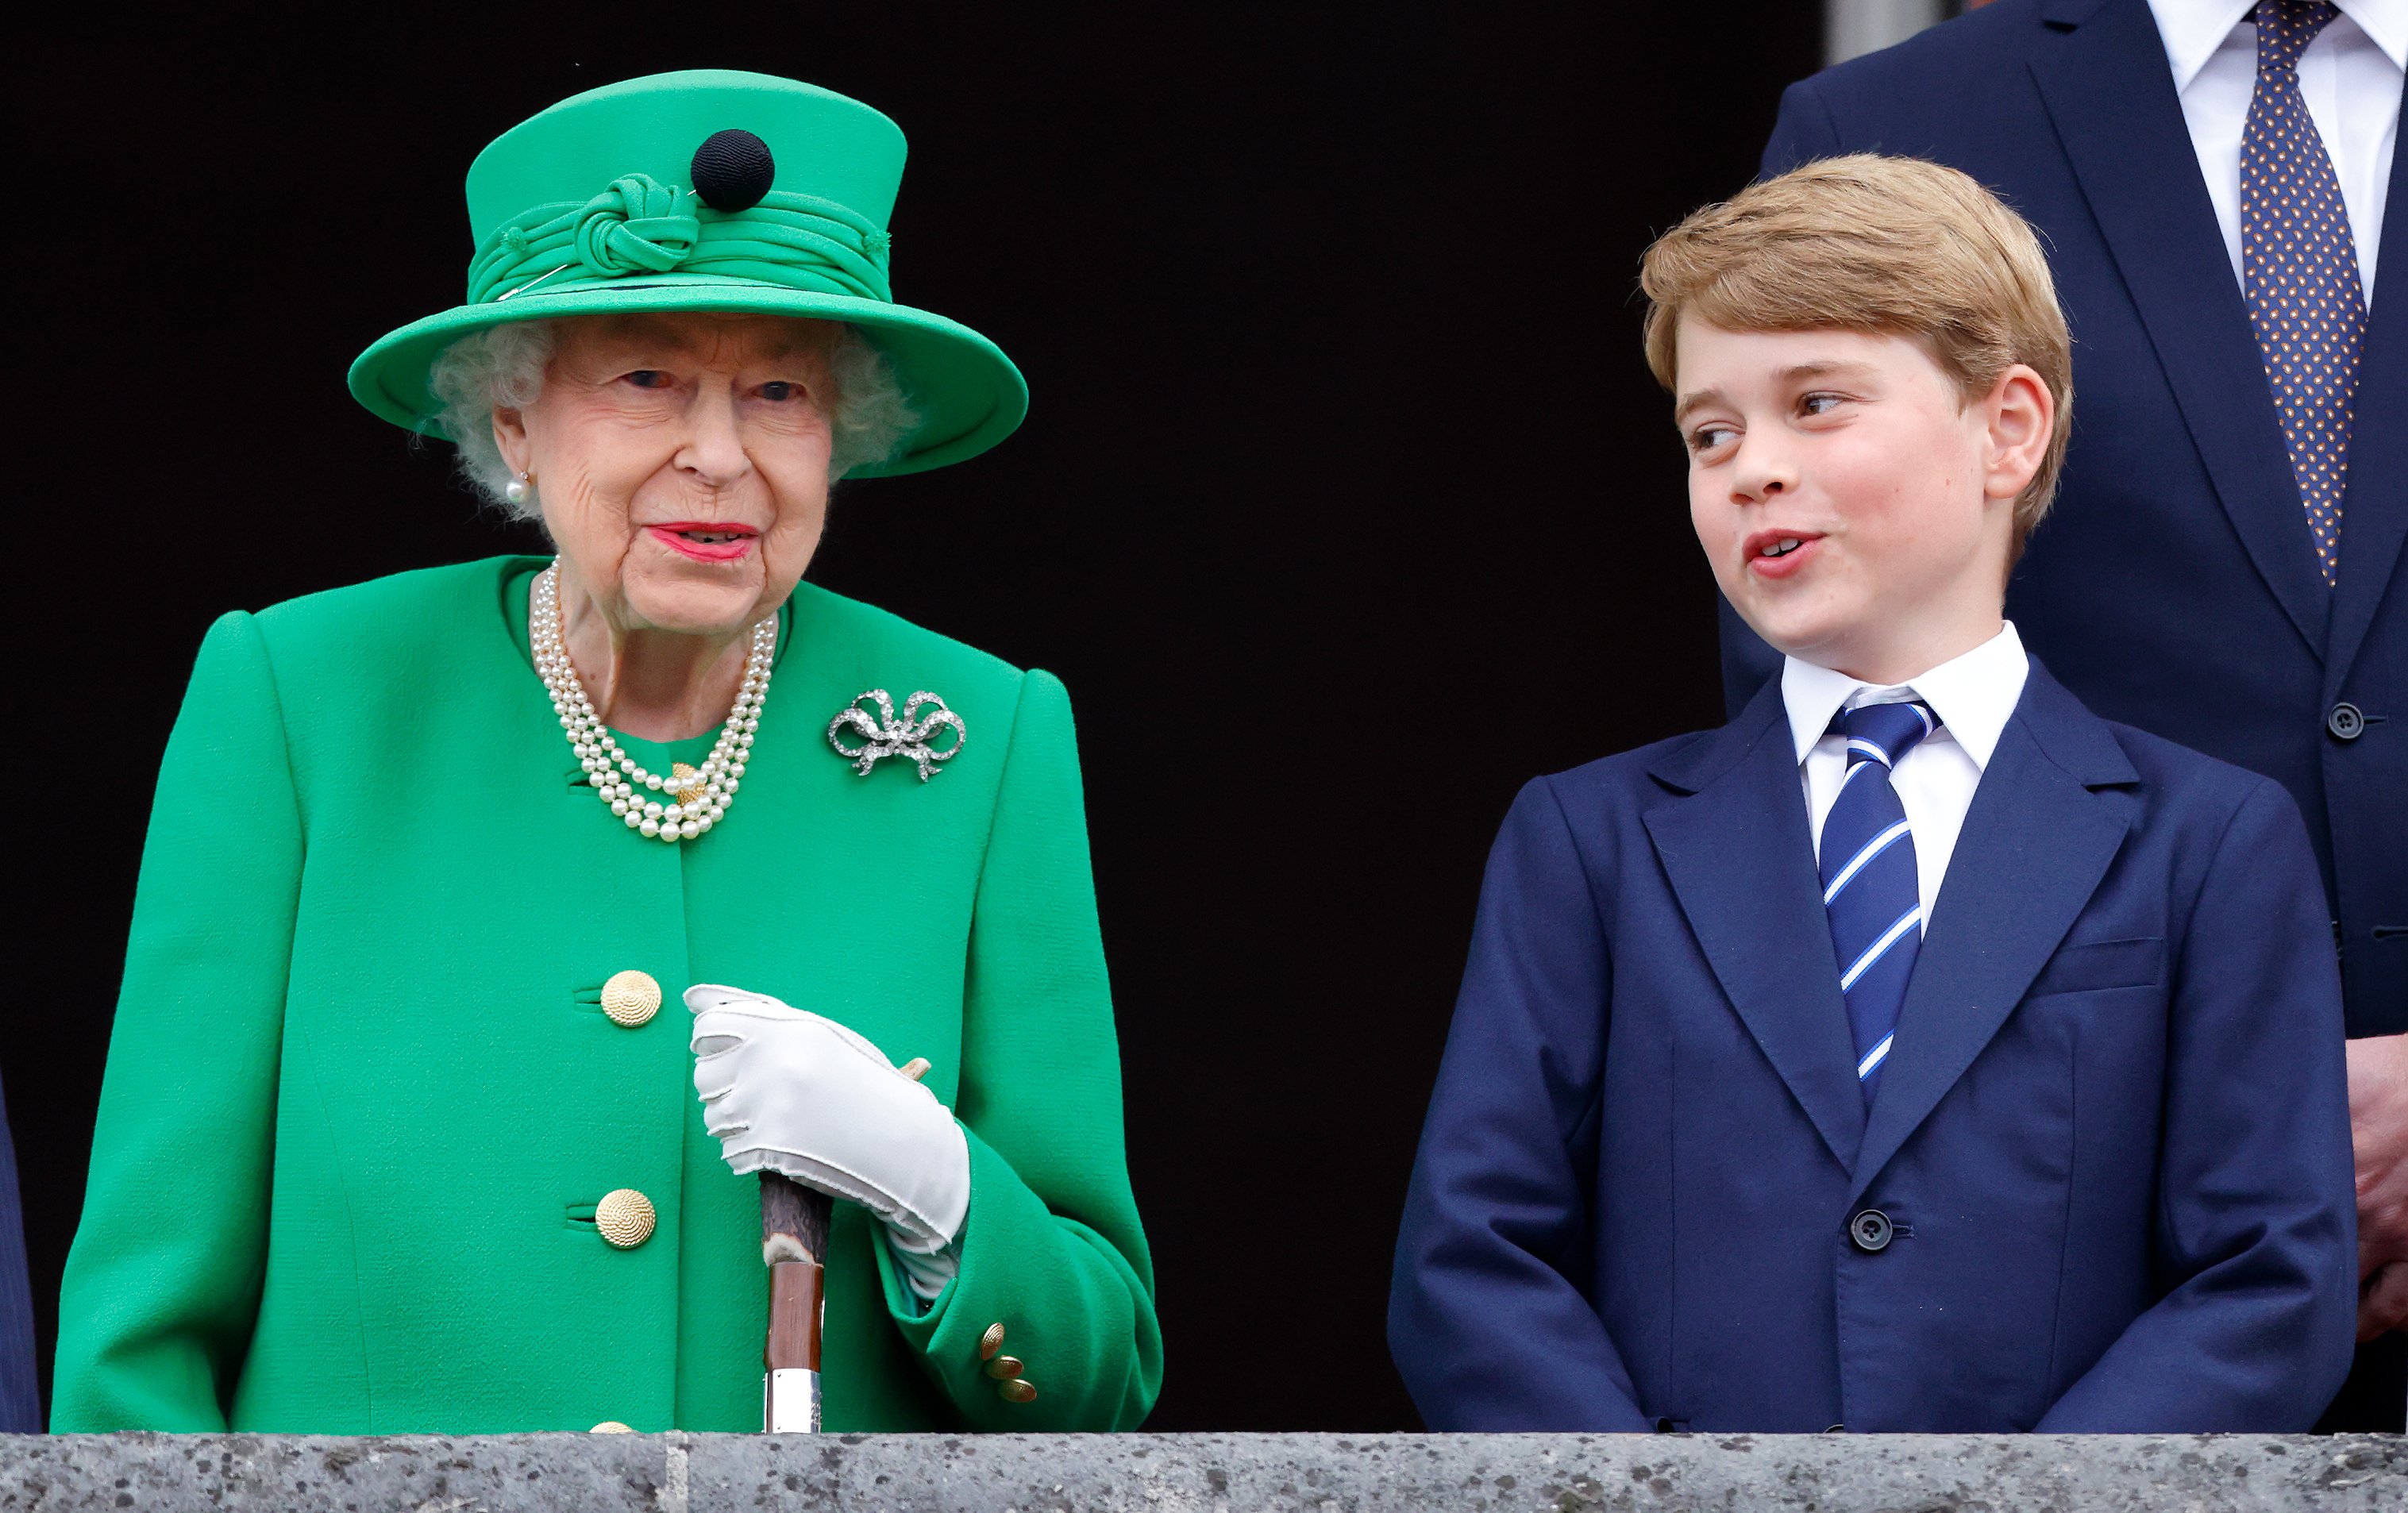 La reina Elizabeth II y el príncipe George se paran en el balcón del Palacio de Buckingham el 5 de junio de 2022 en Londres, Inglaterra. | Foto: Getty Images